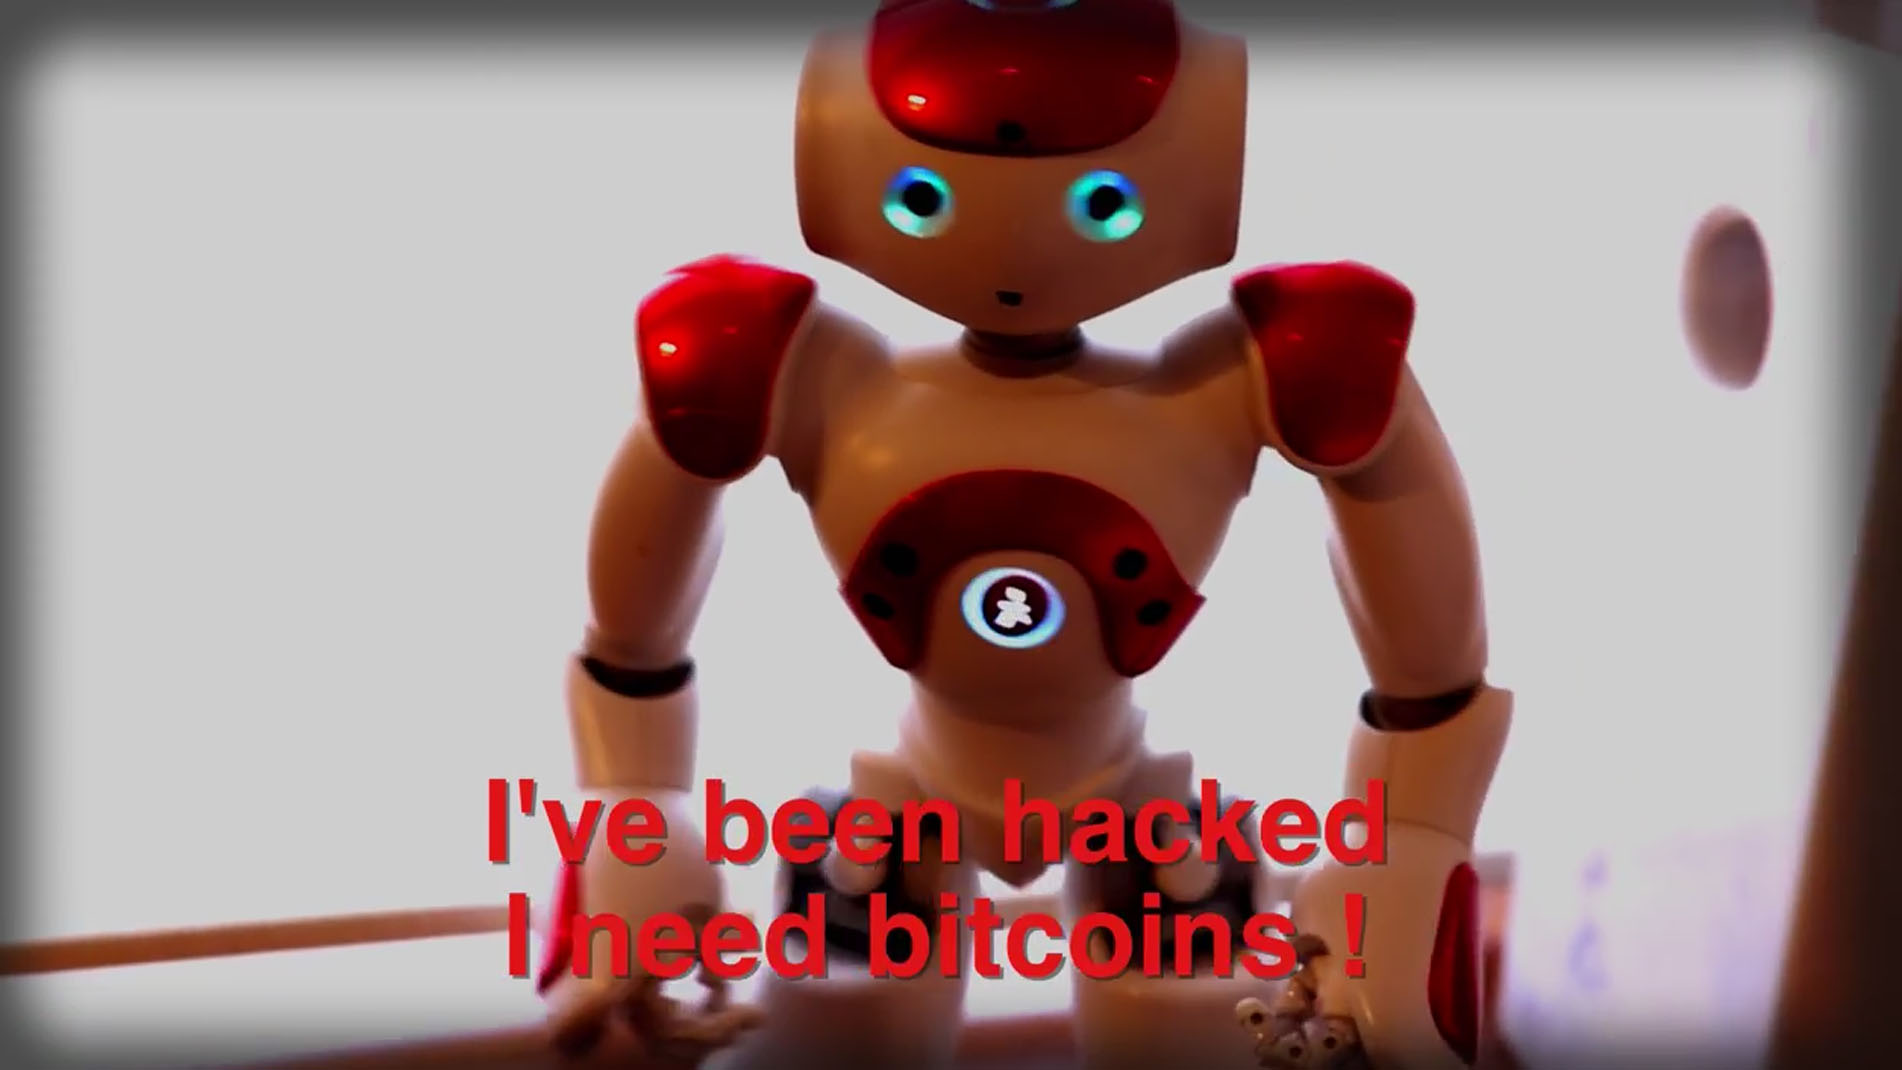 Hacked robot demanding bitcoins (IOActive)